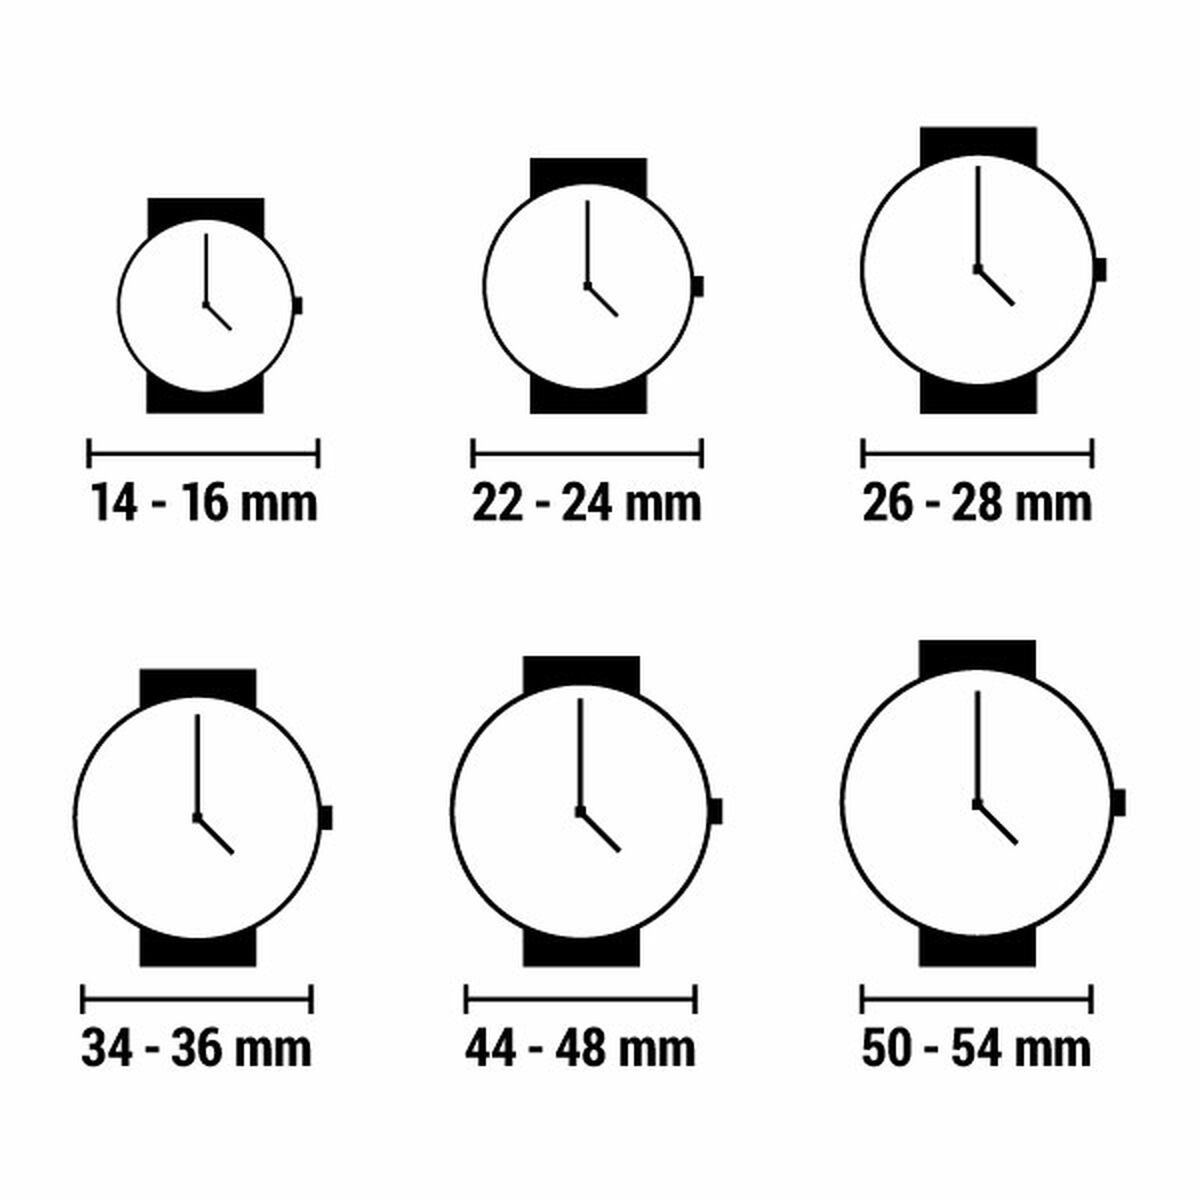 Horloge Uniseks Watx & Colors RWA1634 (Ø 38 mm)